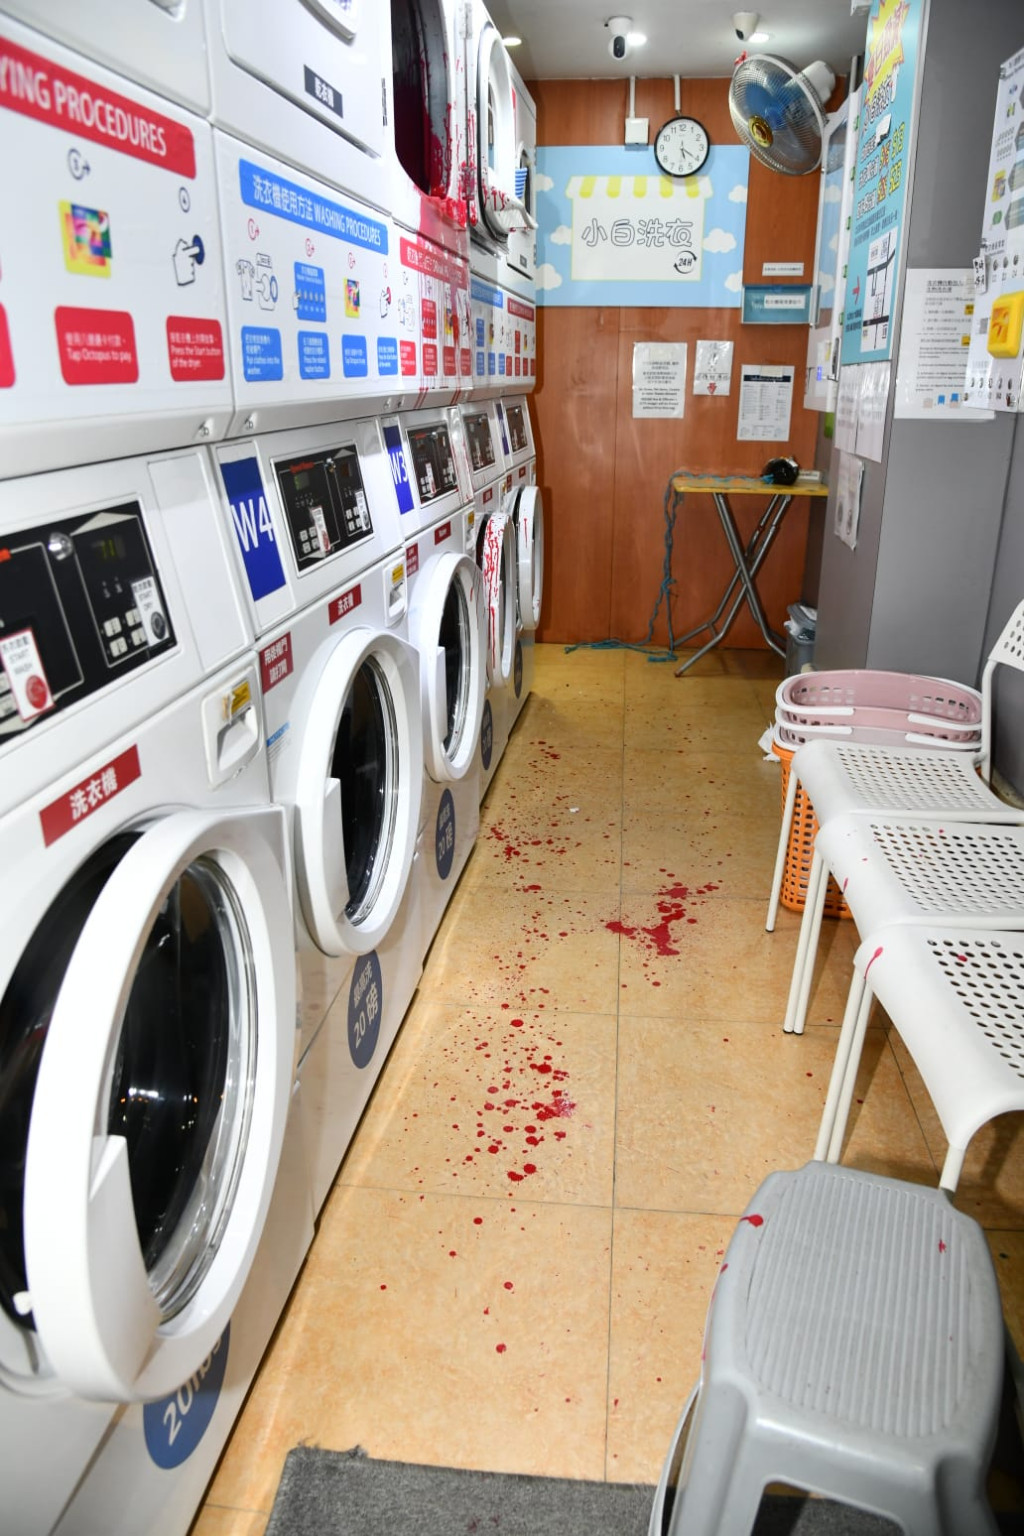 大埔兩自助洗衣店遭淋紅油。